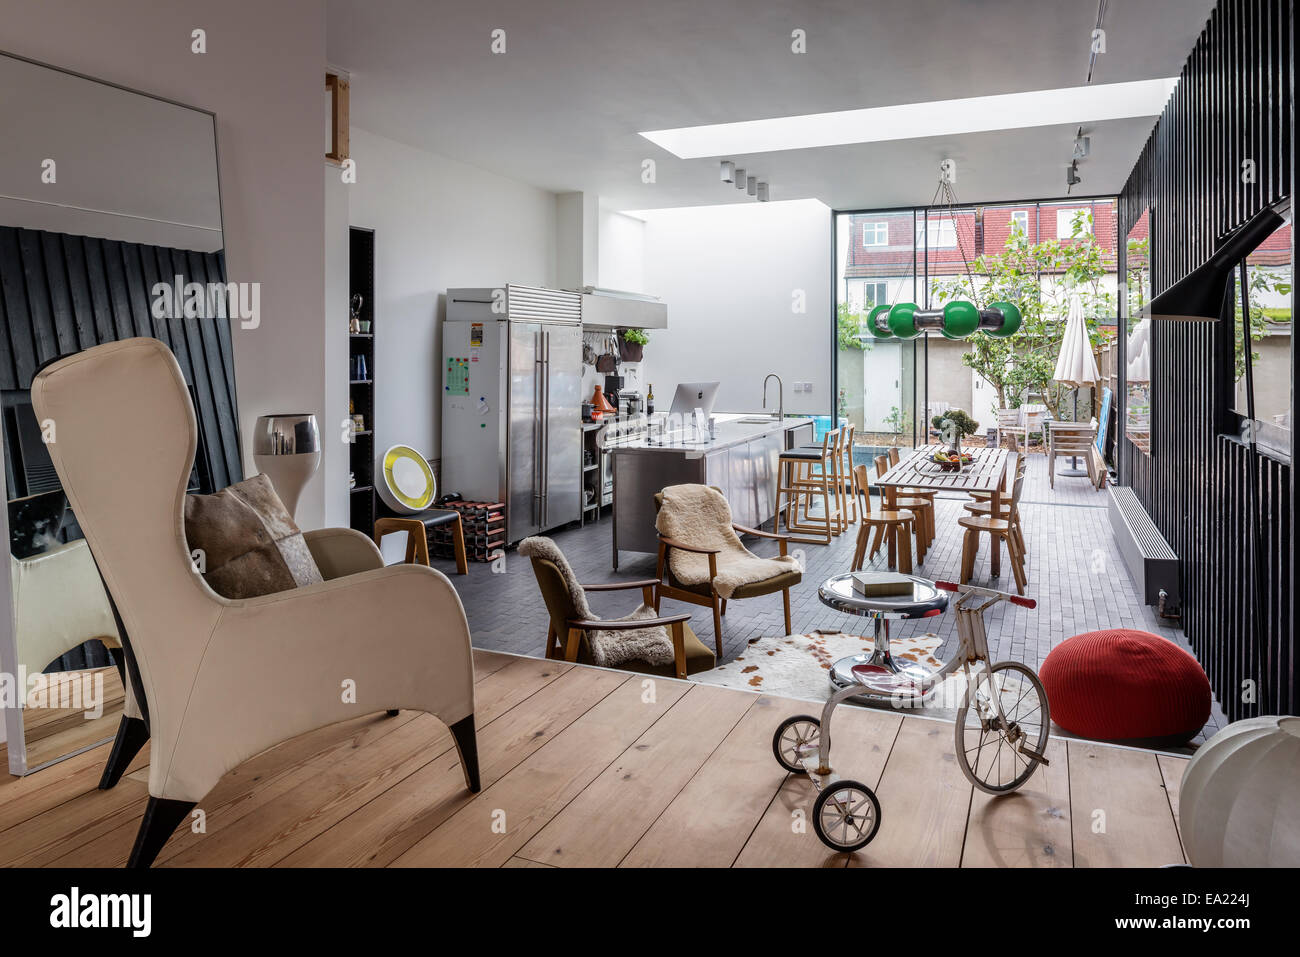 Moderne offene Küche Wohnraum mit Ohrensessels und Dreirad im Vordergrund. Stockfoto